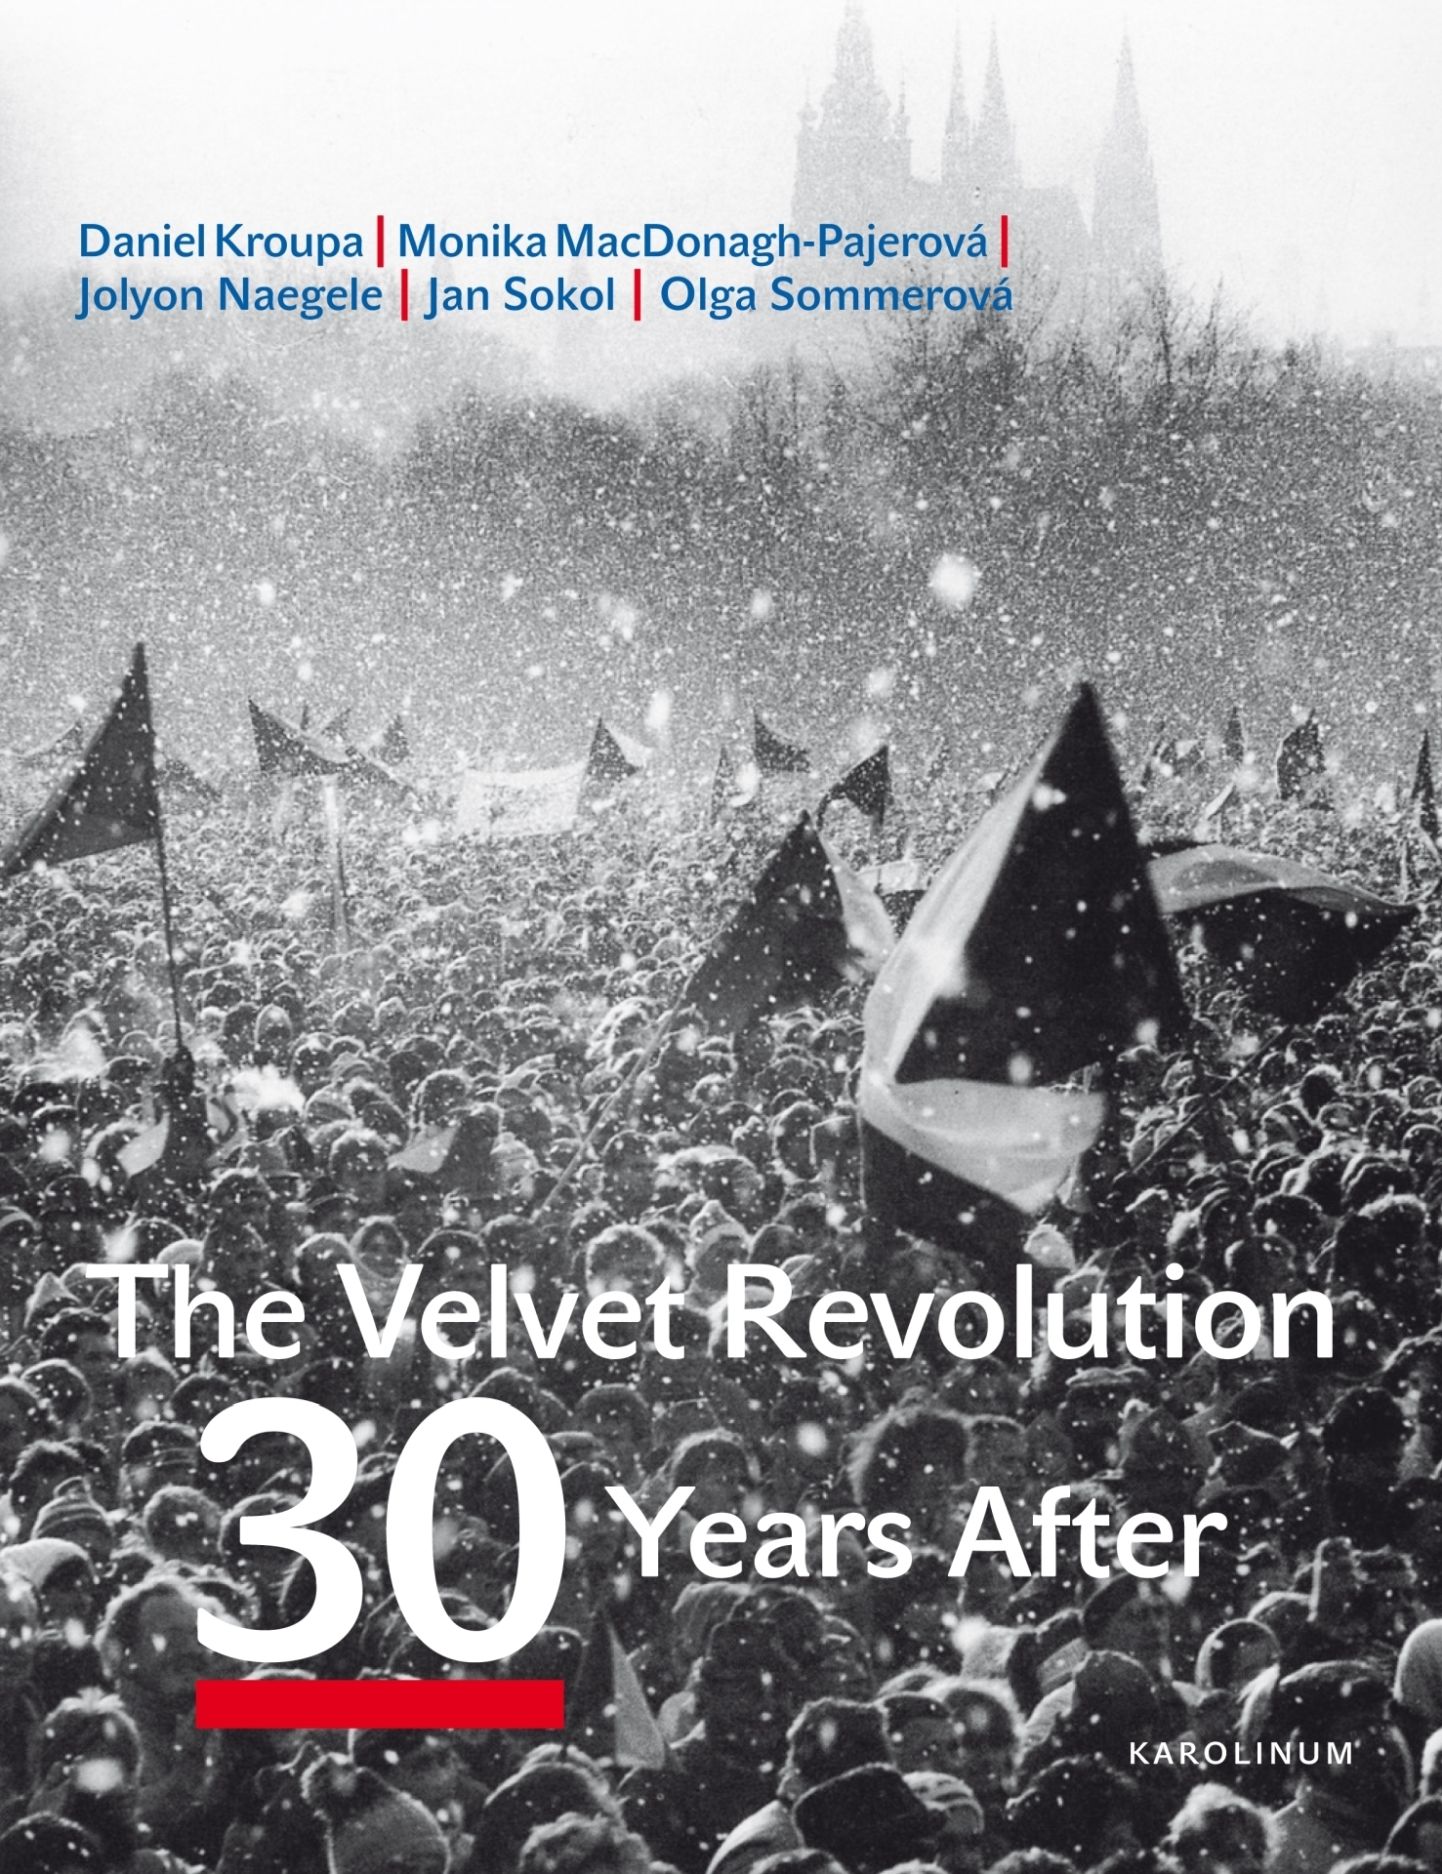 The Velvet Revolution